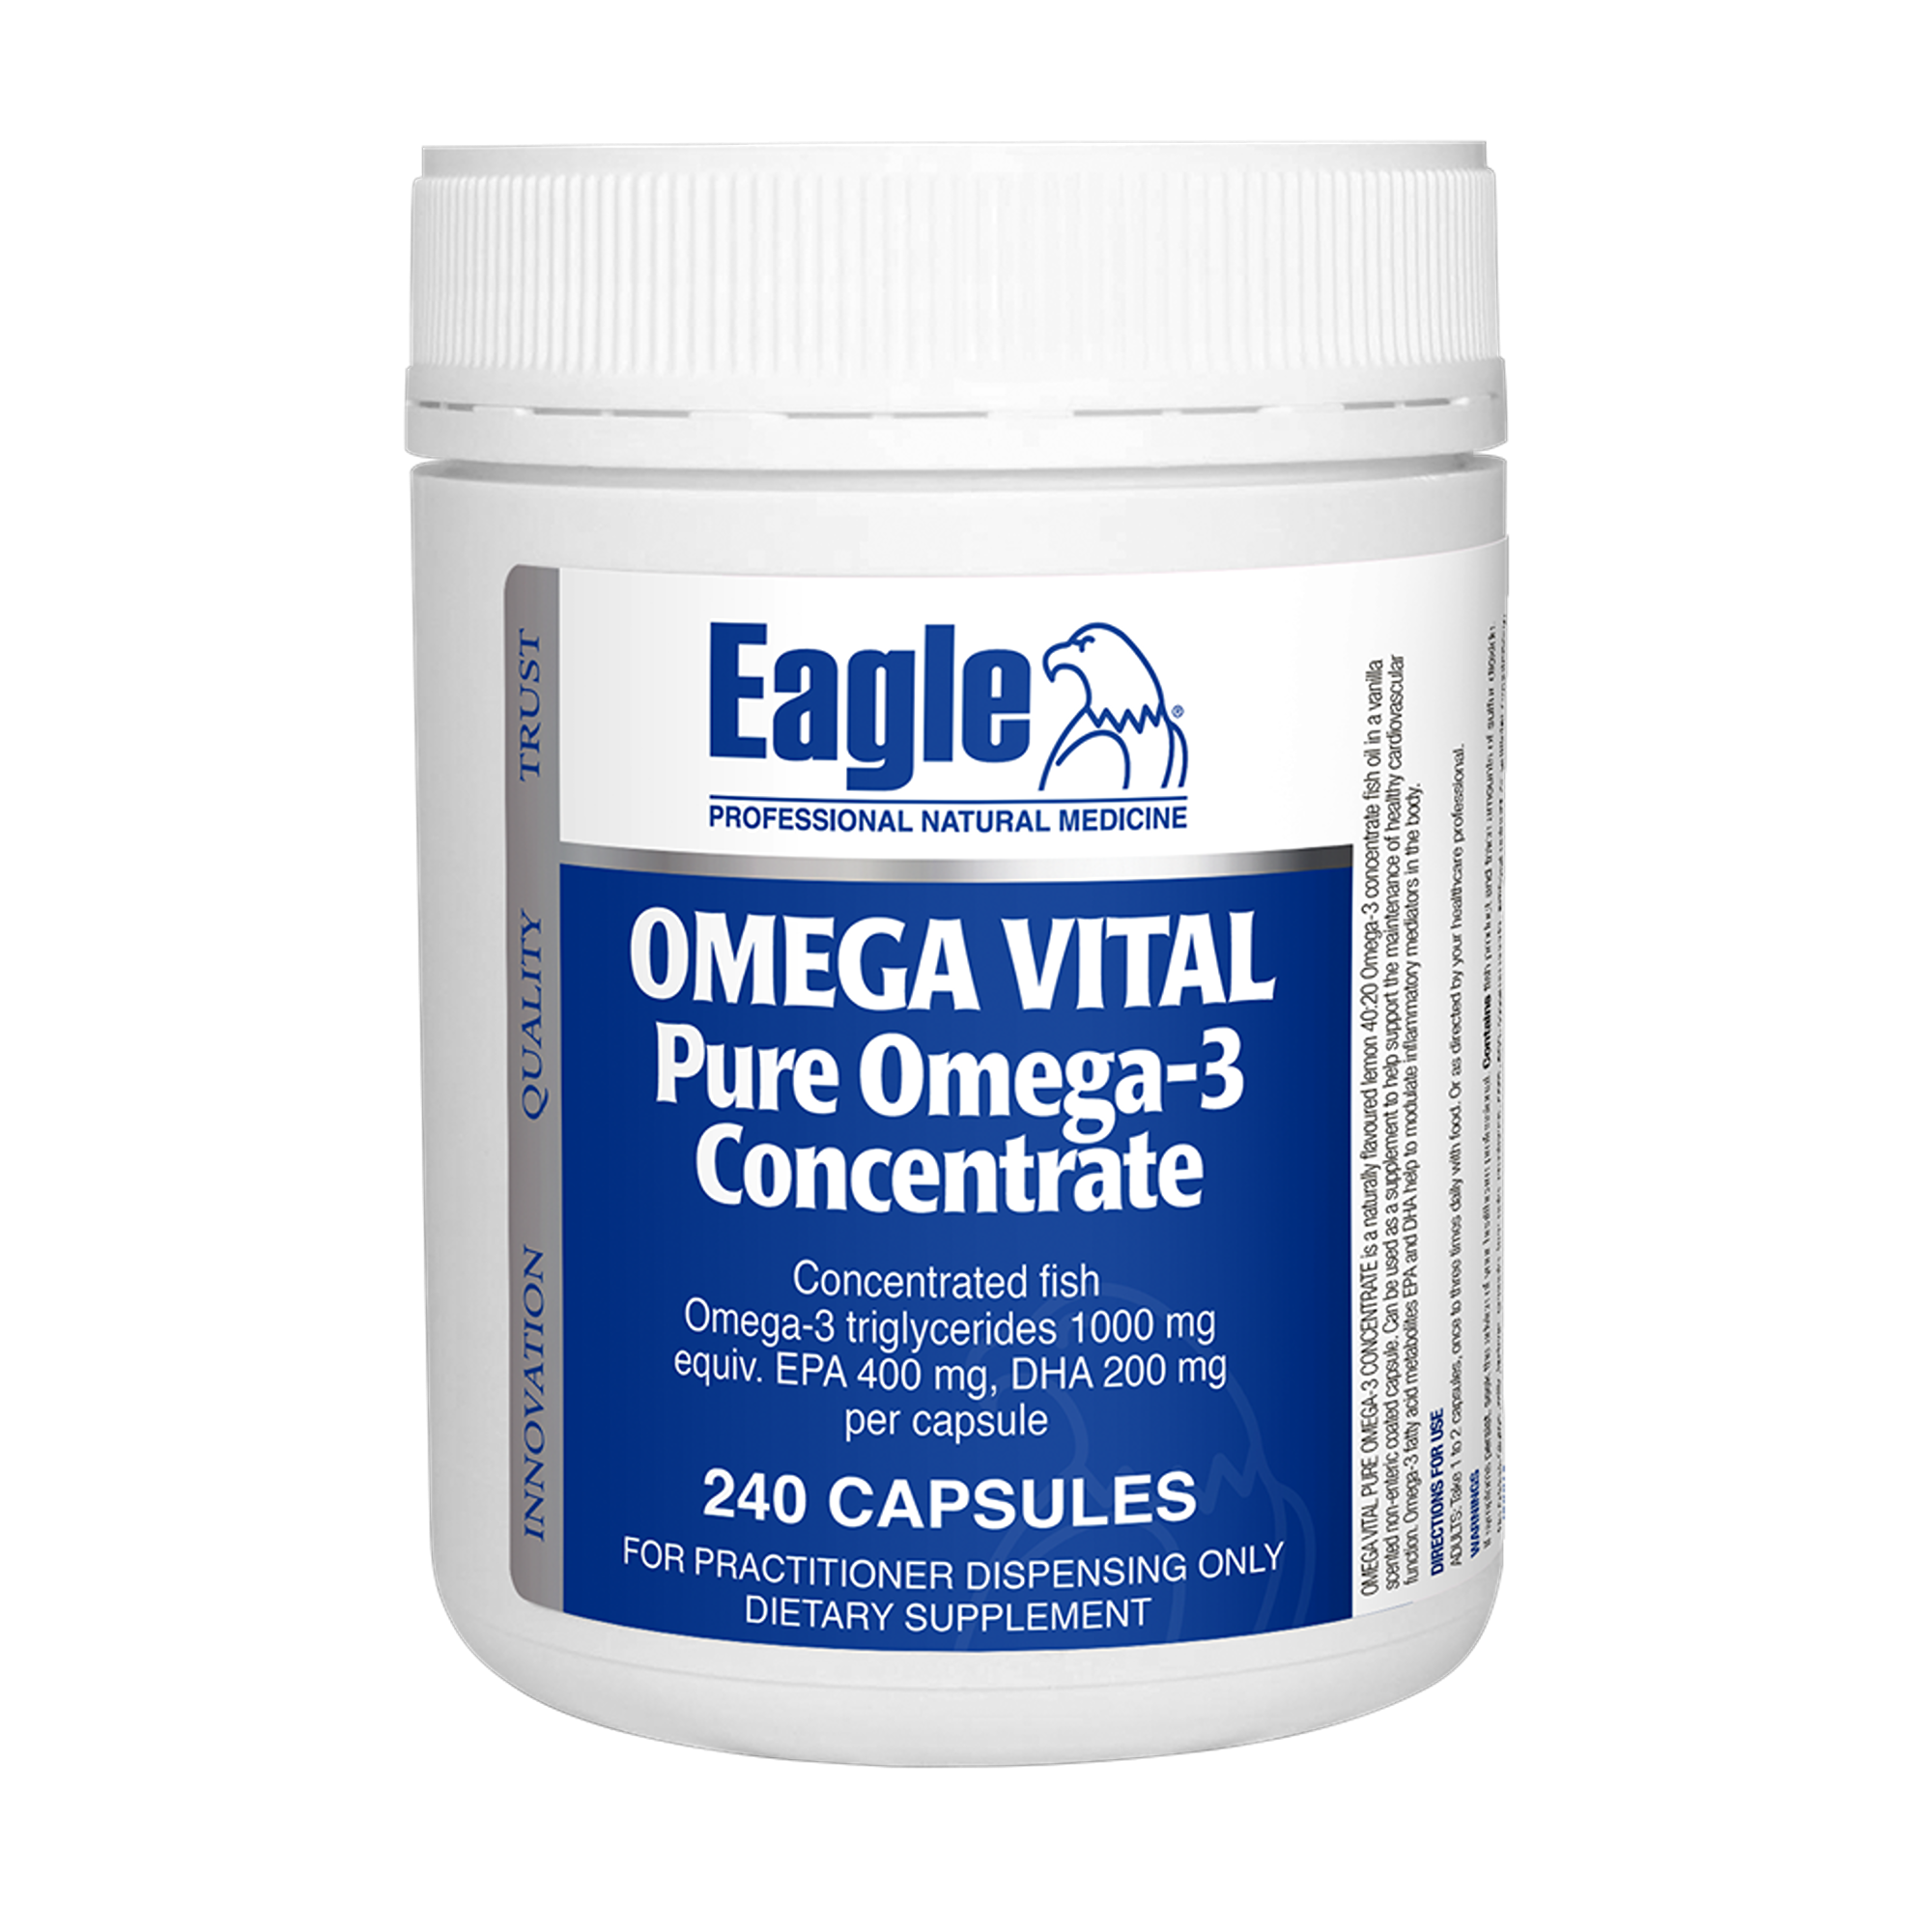 Eagle Omega Vital Pure Omega 3 Concentrate Capsules 240s